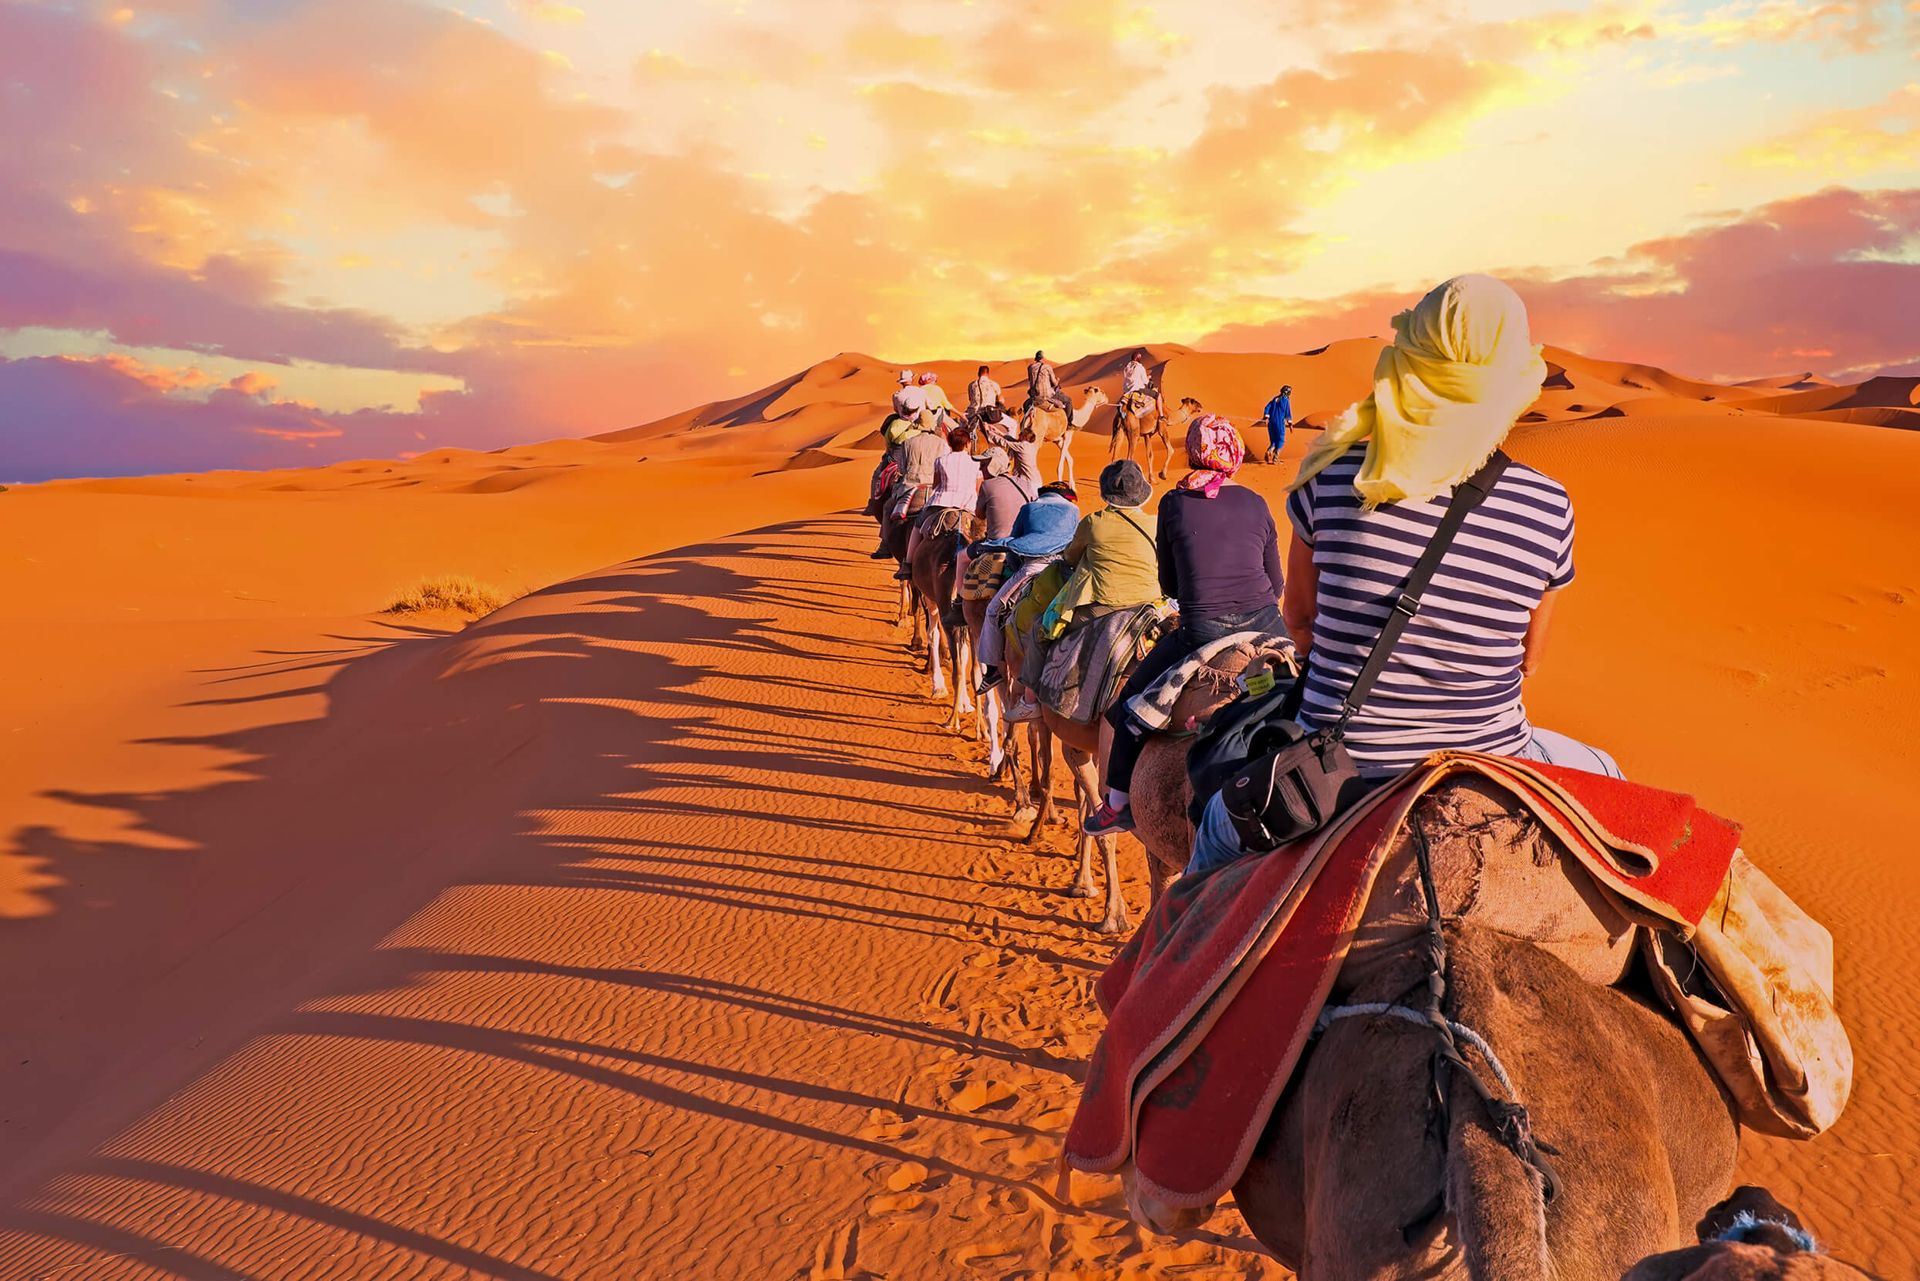 explore sahara tours